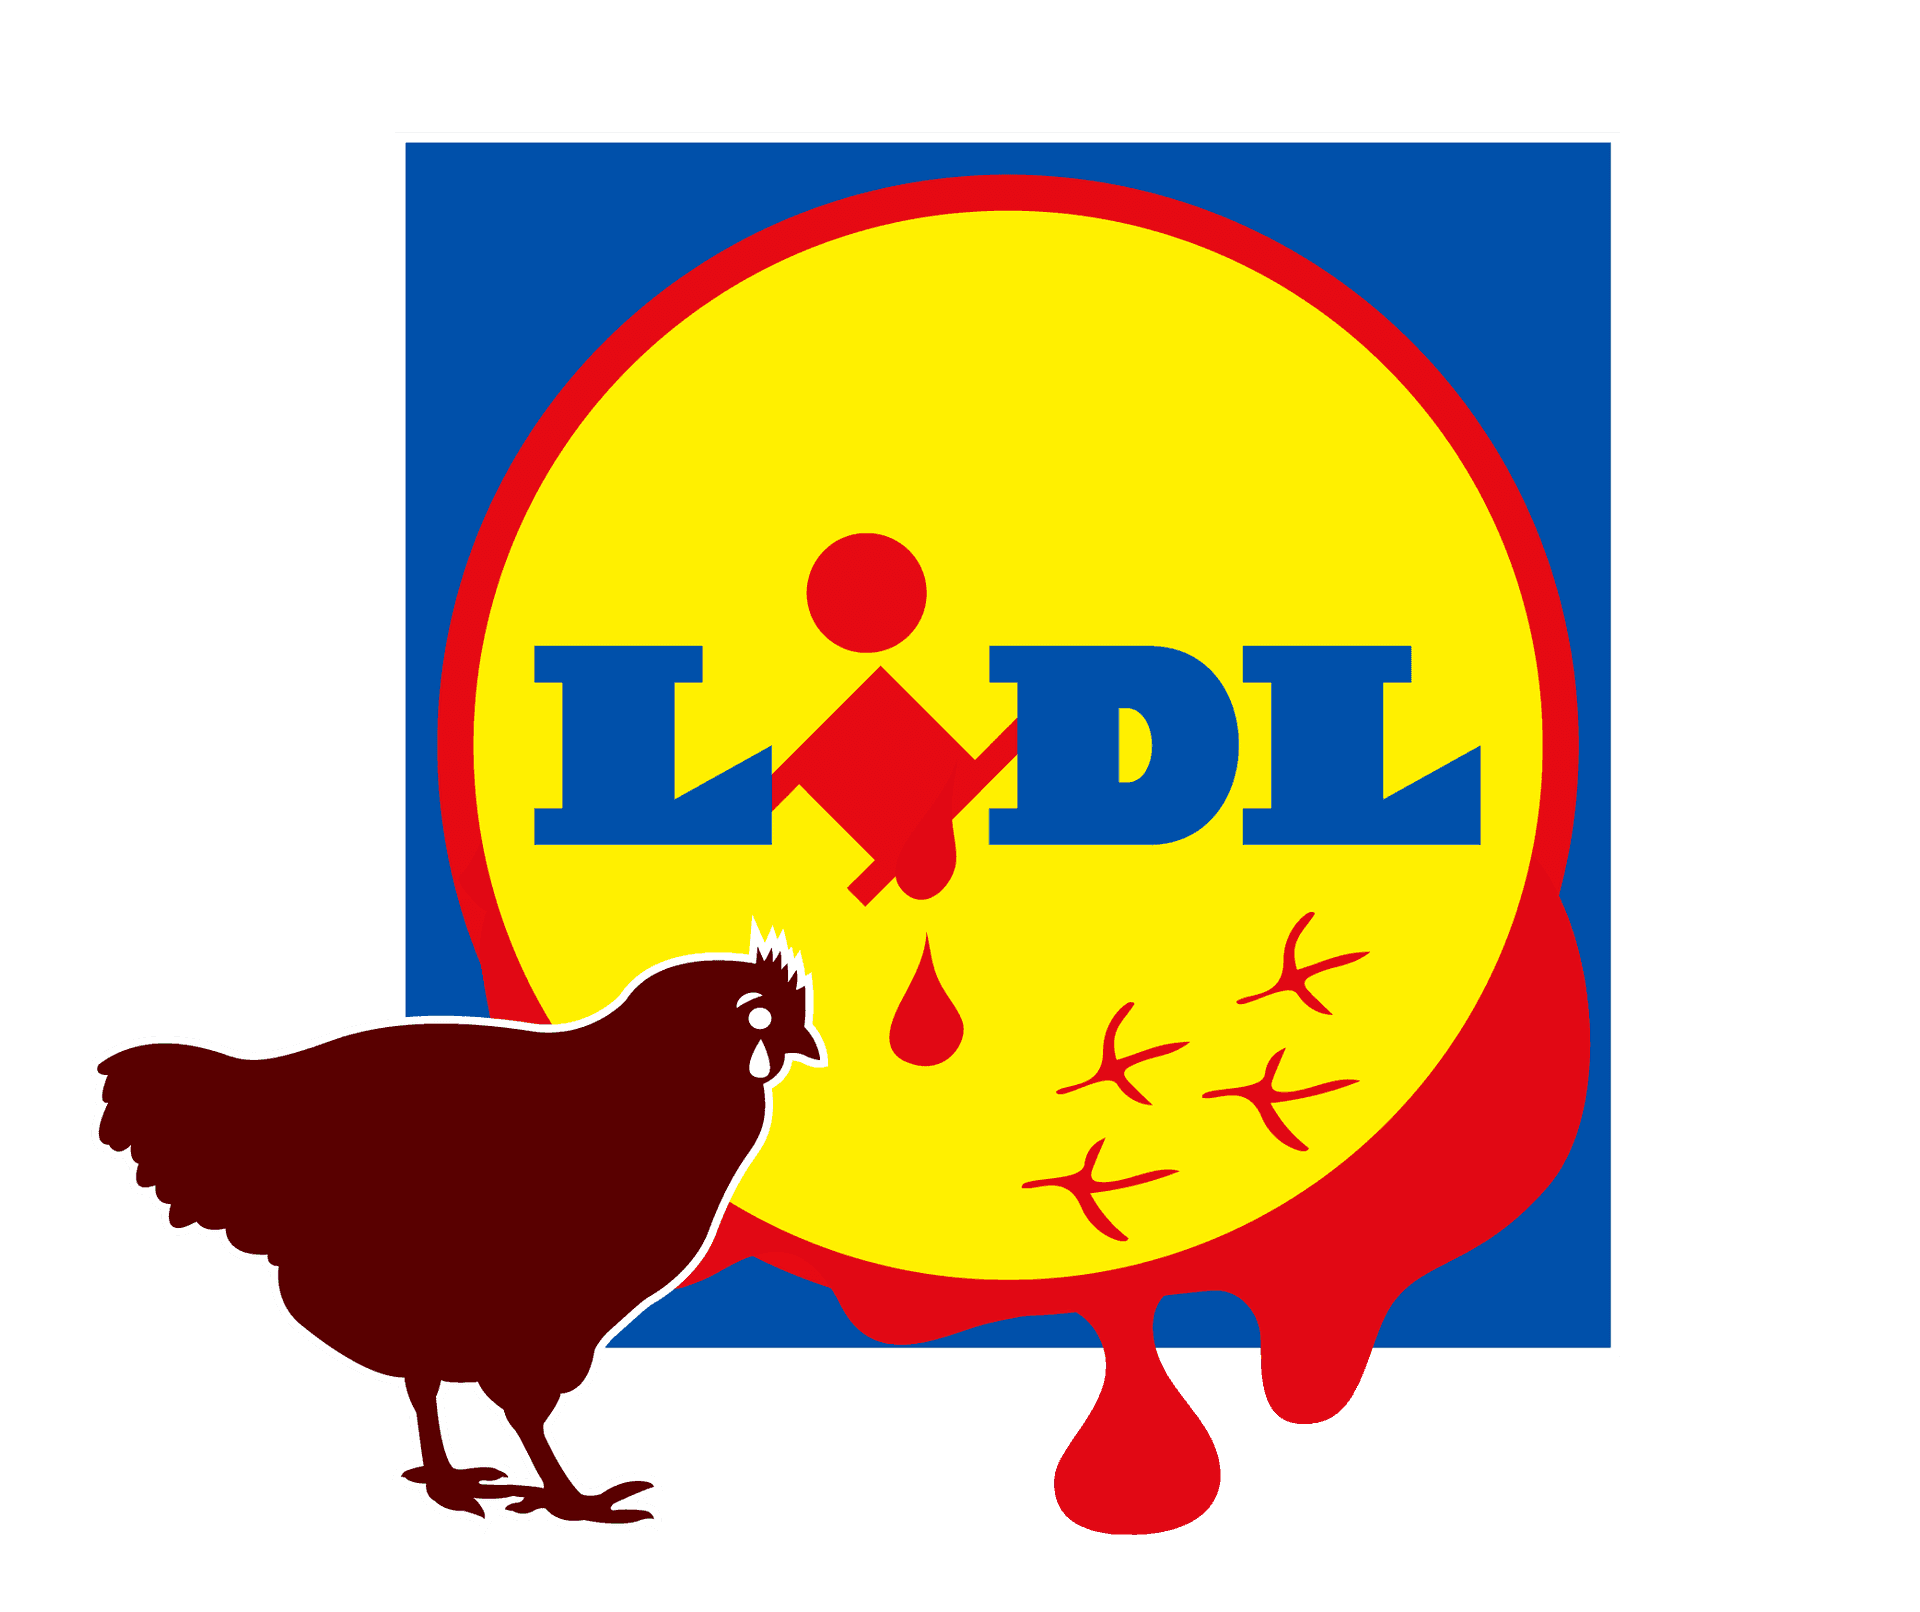 Lidl logo, josta valuu verta ja jonka edessä punainen kana